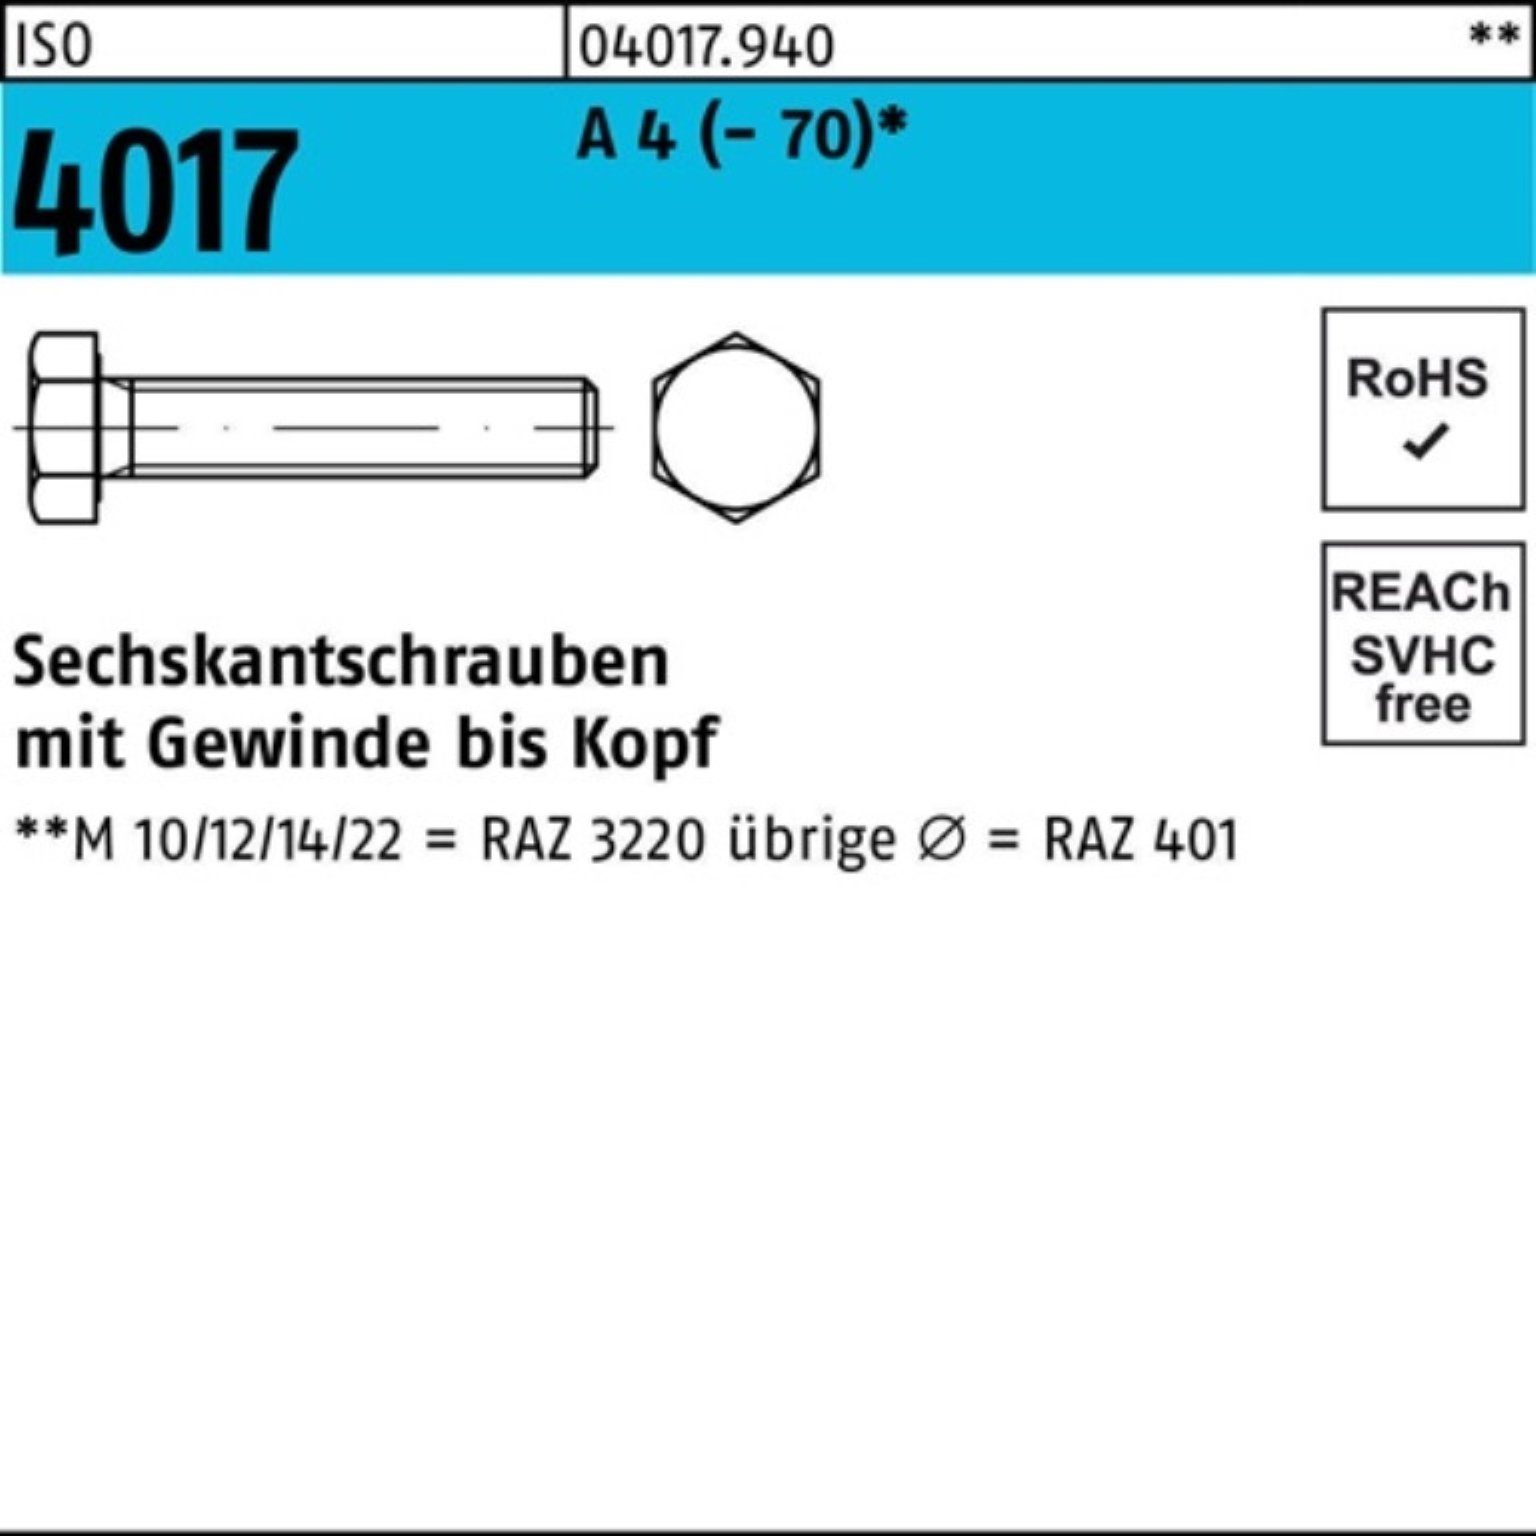 Bufab Sechskantschraube 100er Pack Sechskantschraube ISO 4017 VG M16x 35 A 4 (70) 50 Stück | Schrauben